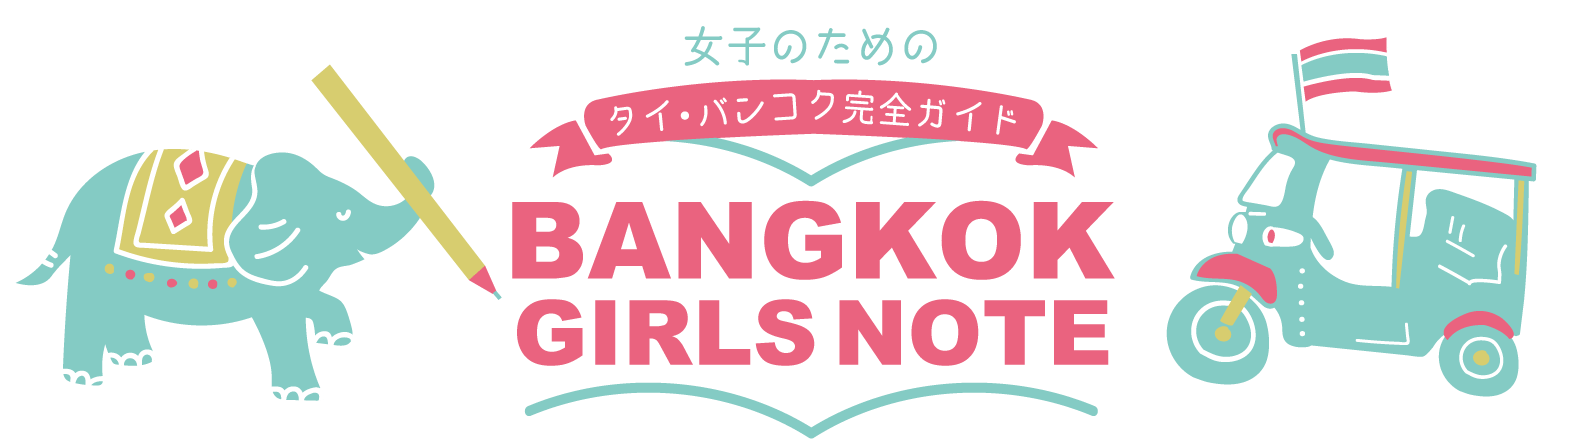 女子のためのタイ・バンコク完全ガイド BANGKOK GIRLS NOTE (バンコクガールズノート)